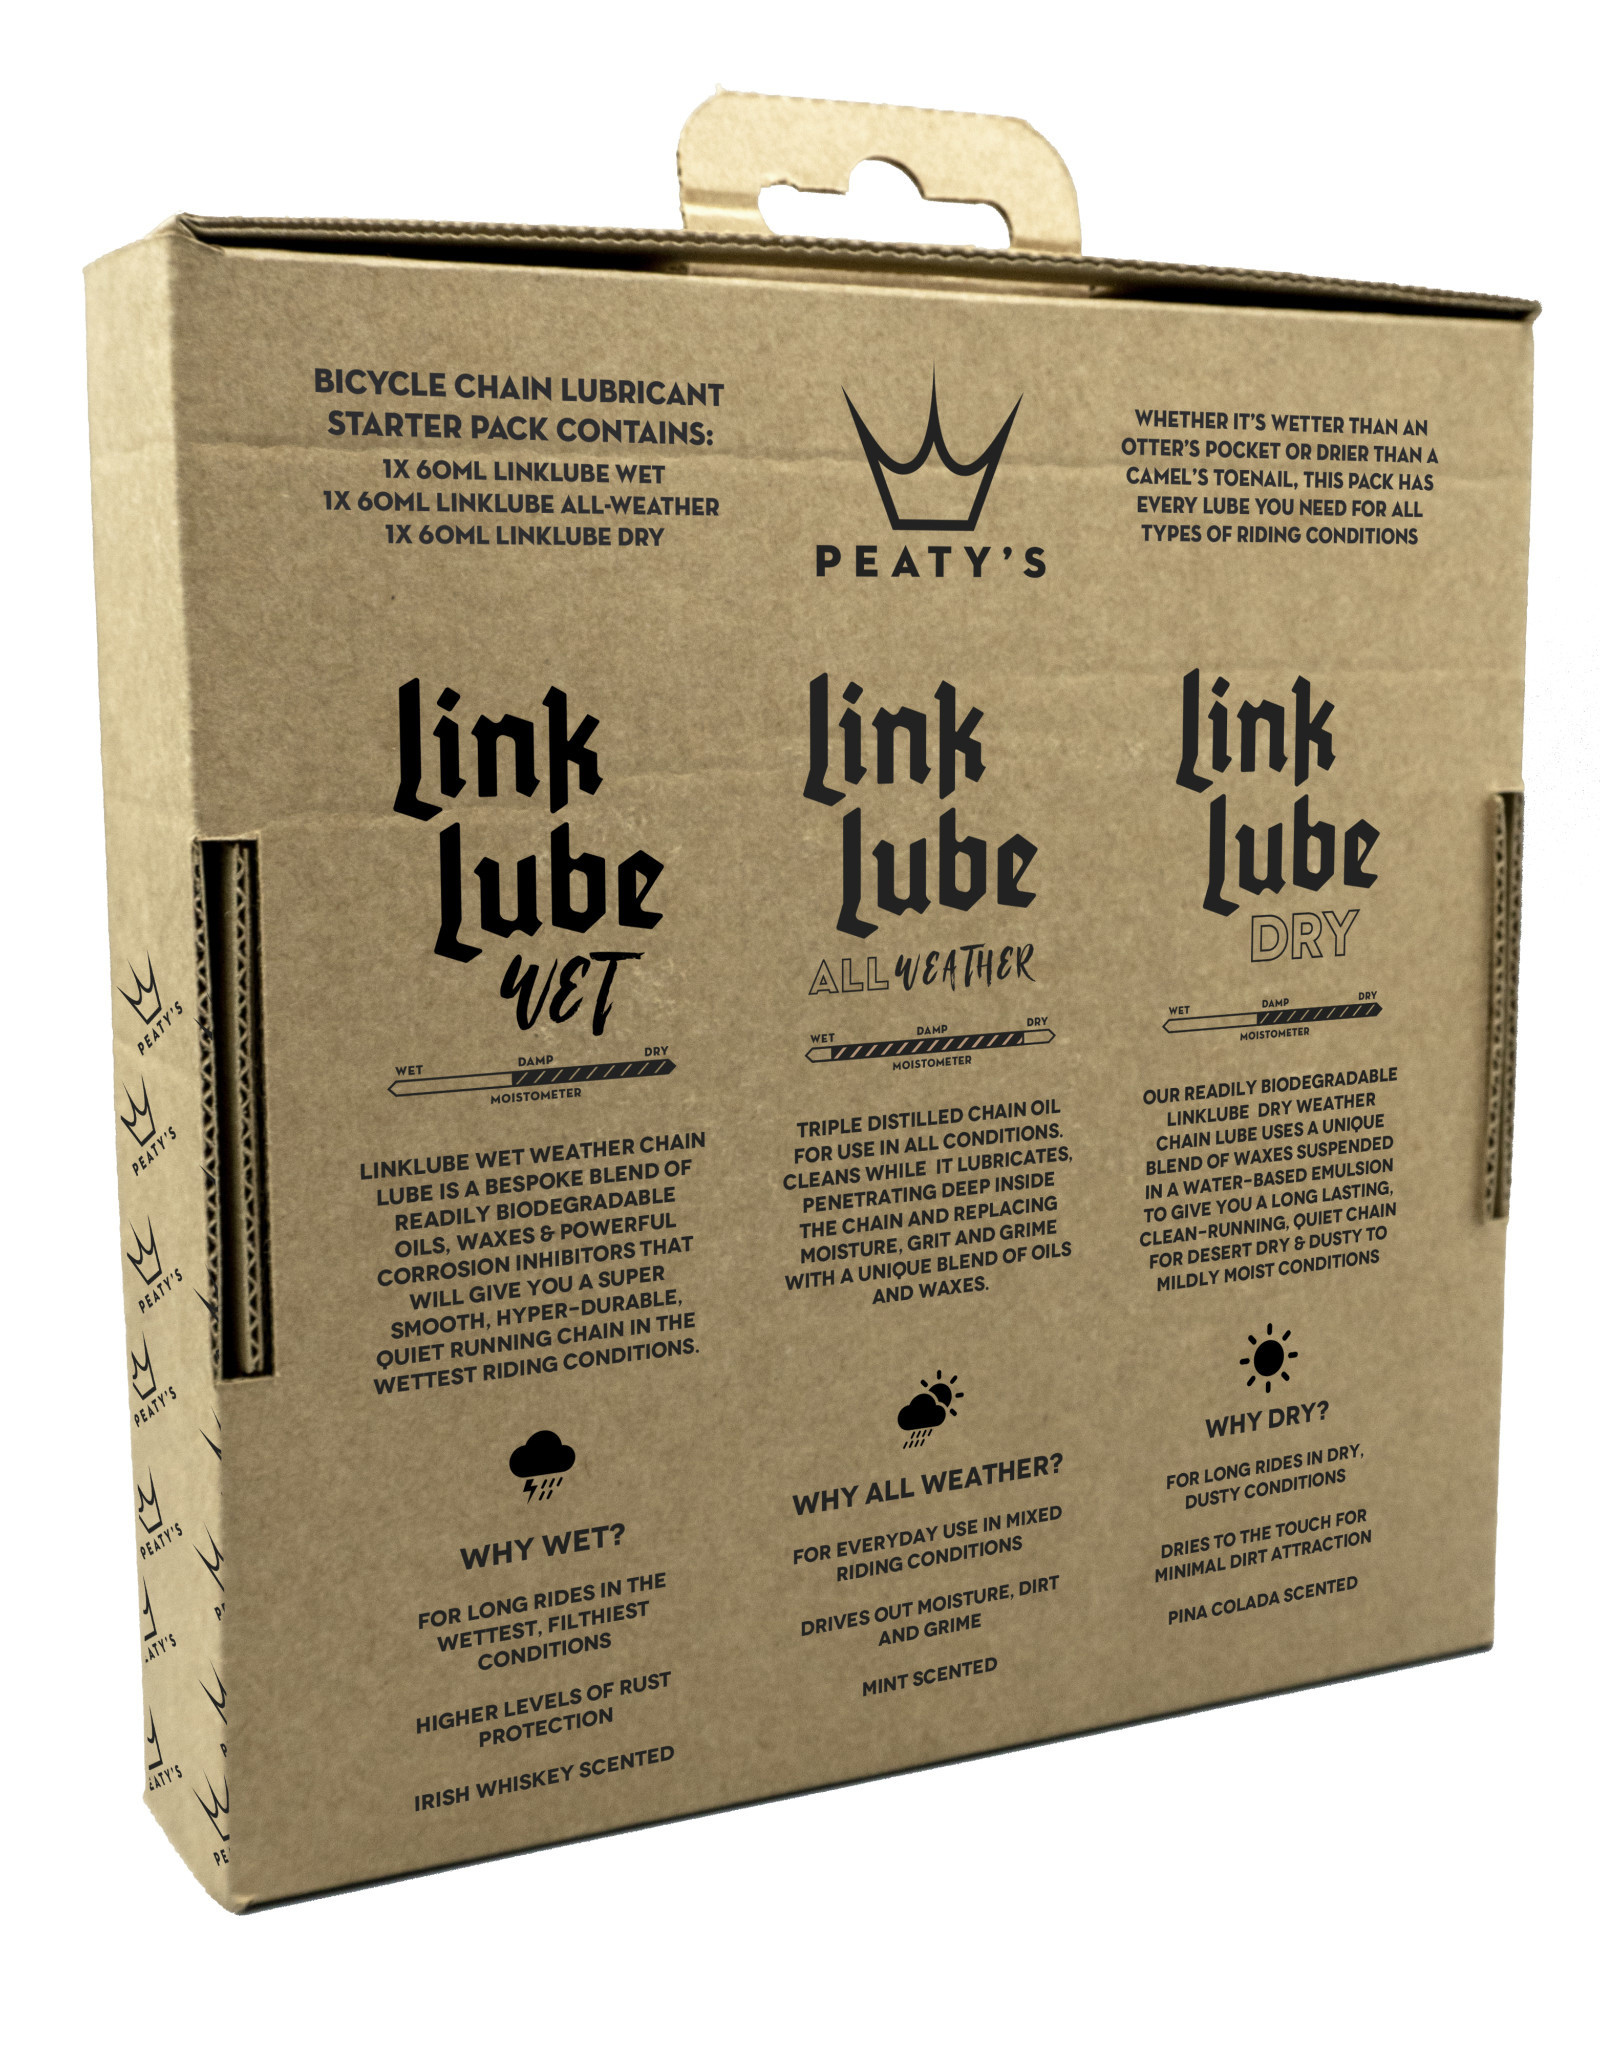 Peaty's LinkLube All Seasons Starter Pack